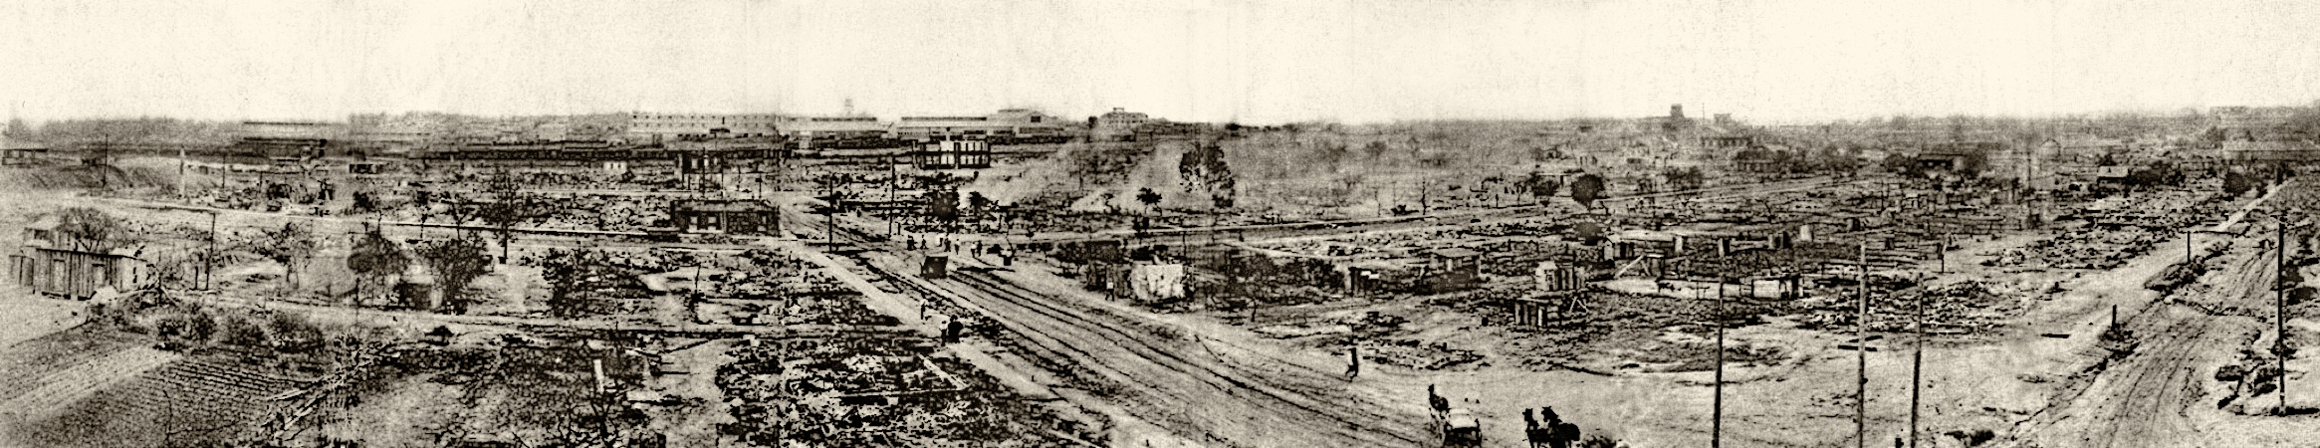 Panorama de la destrucción de Greenwood